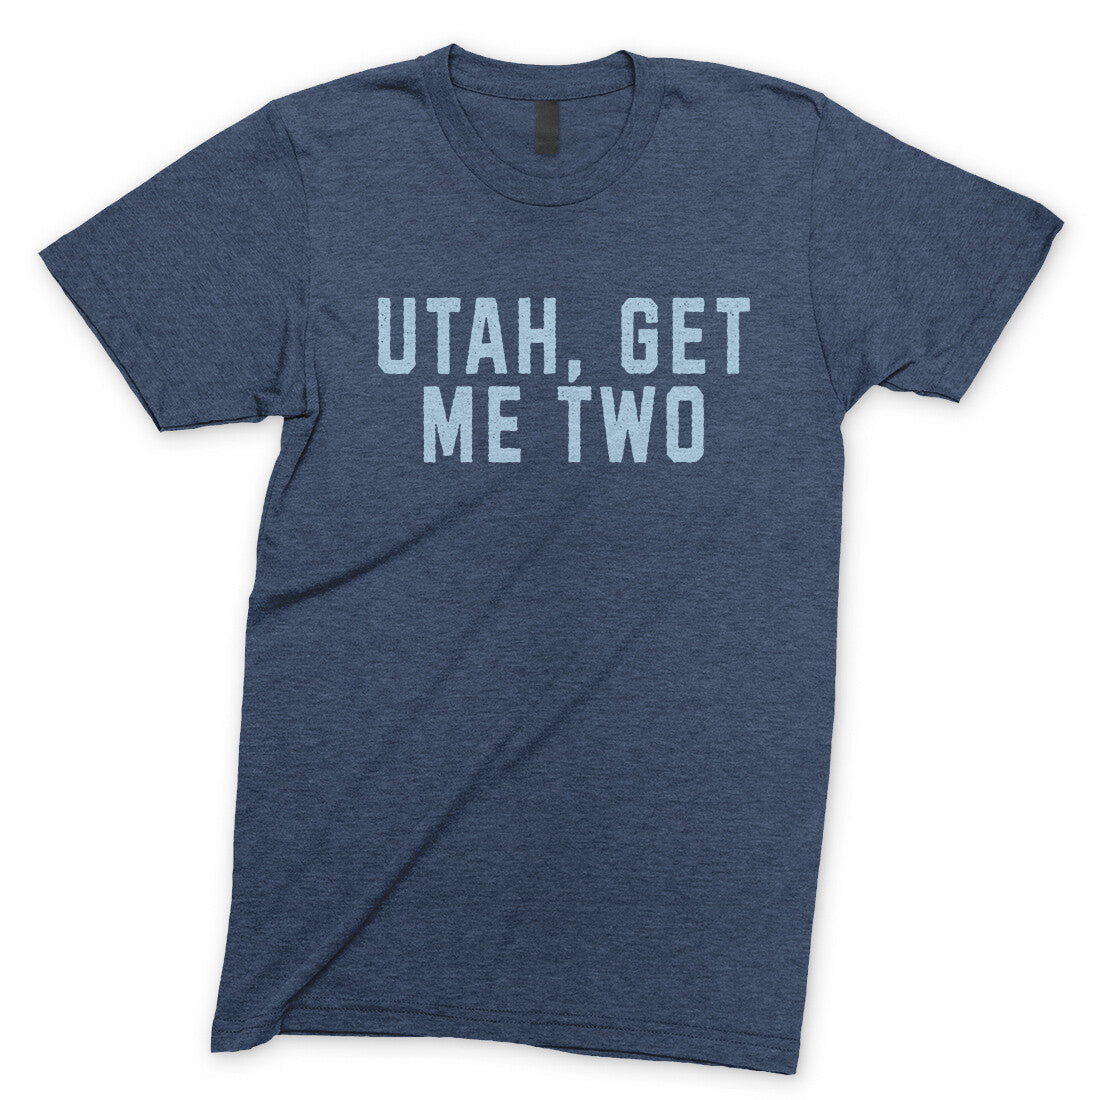 Utah Get me Two in Navy Heather Color